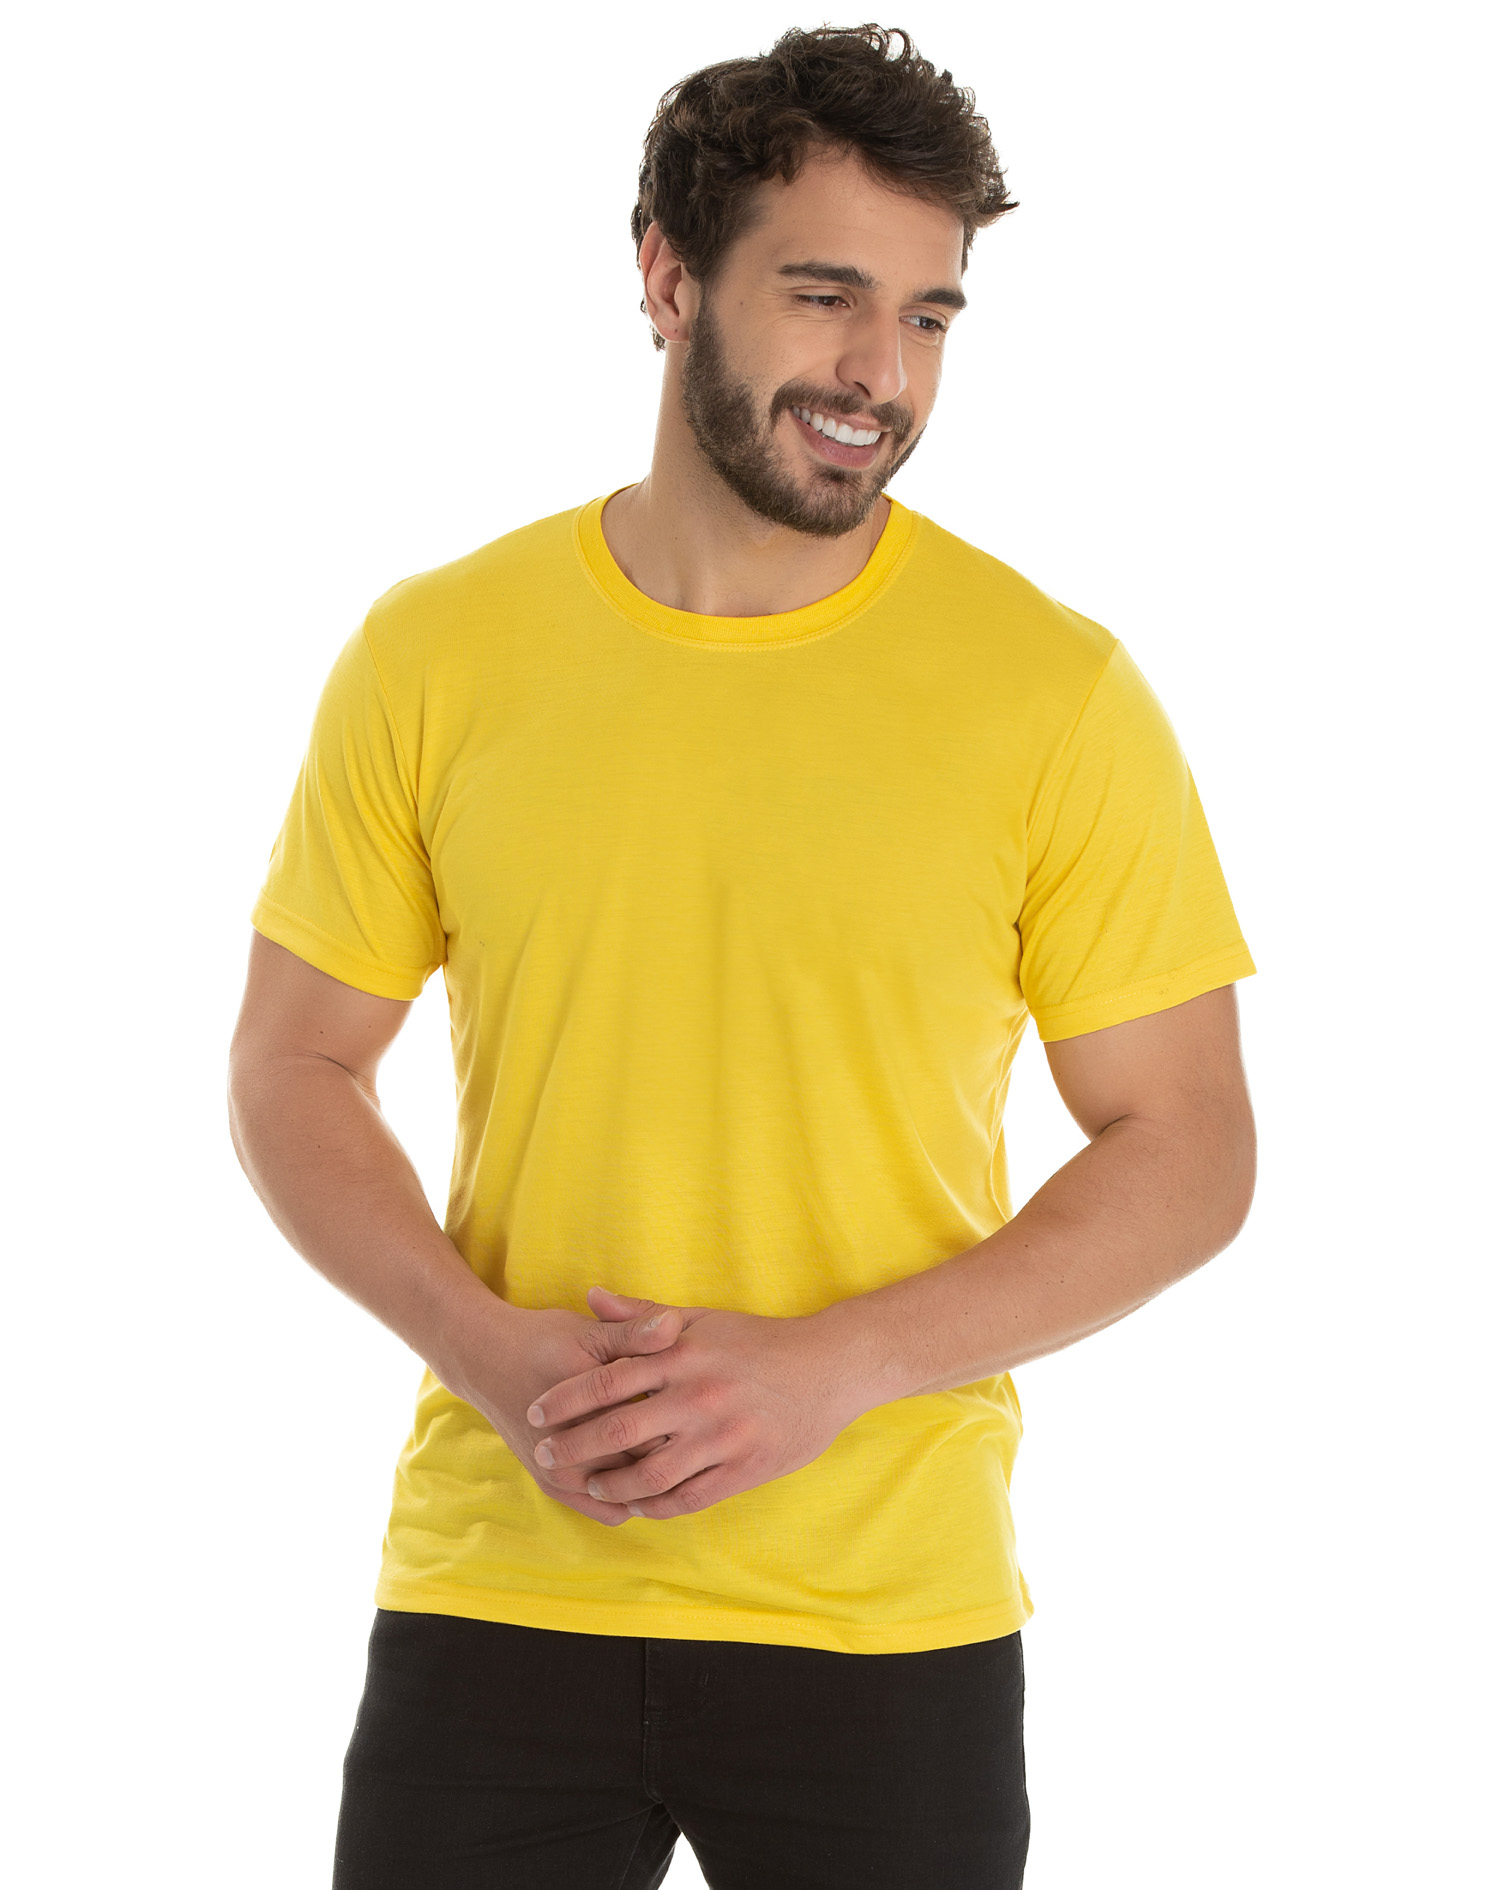 Camiseta PV / Malha Fria Amarelo Canário